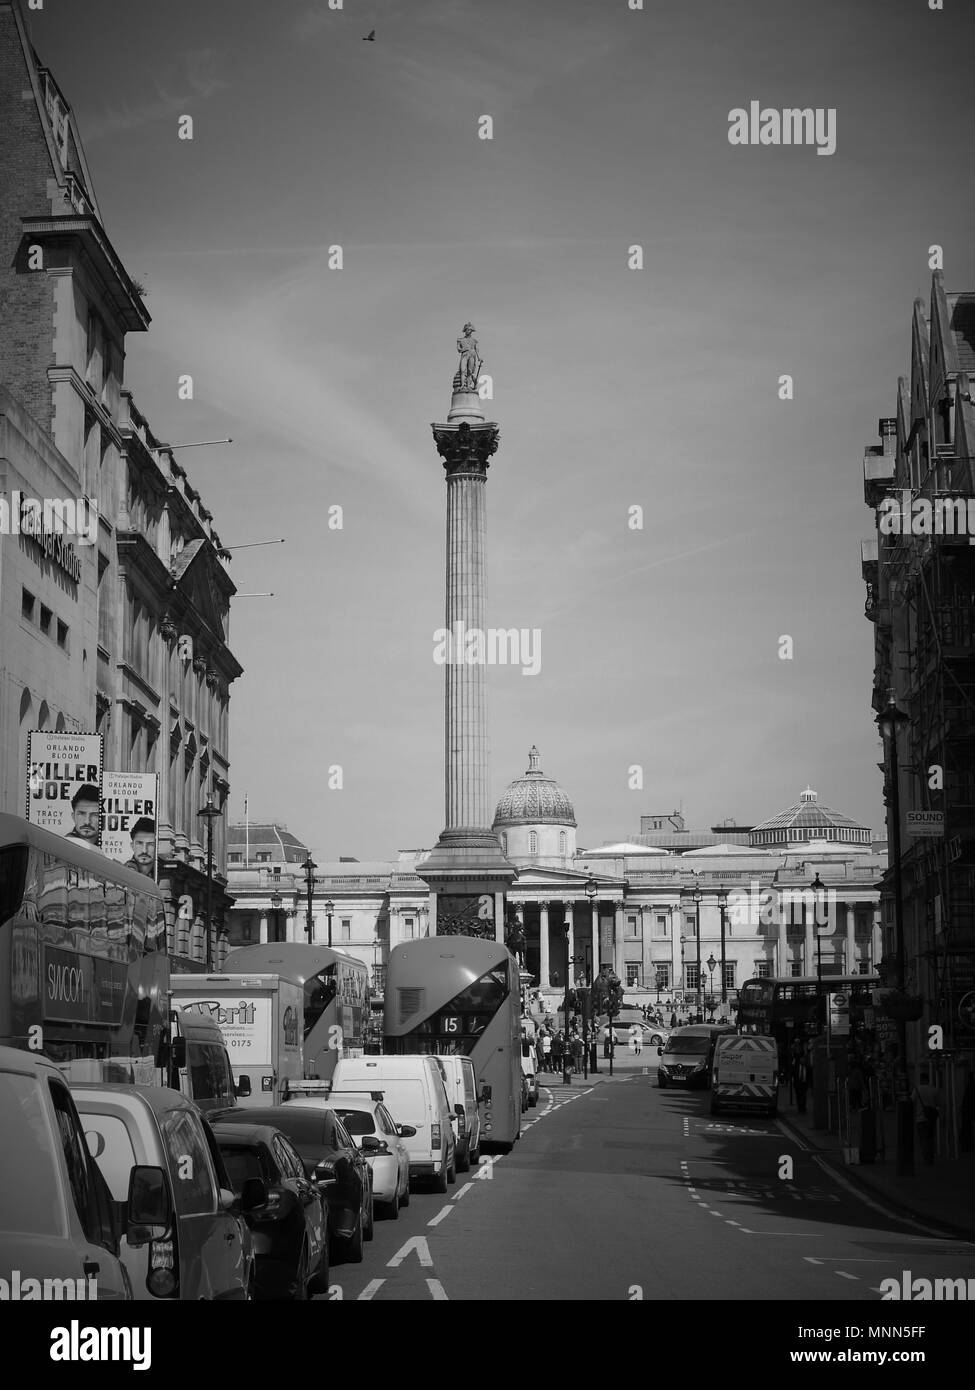 Londres - le 18 mai 2018 : ( Image modifiée numériquement à monochrome ) Avis de pointe dans la région de Whitehall avec la Colonne Nelson de la distance Banque D'Images